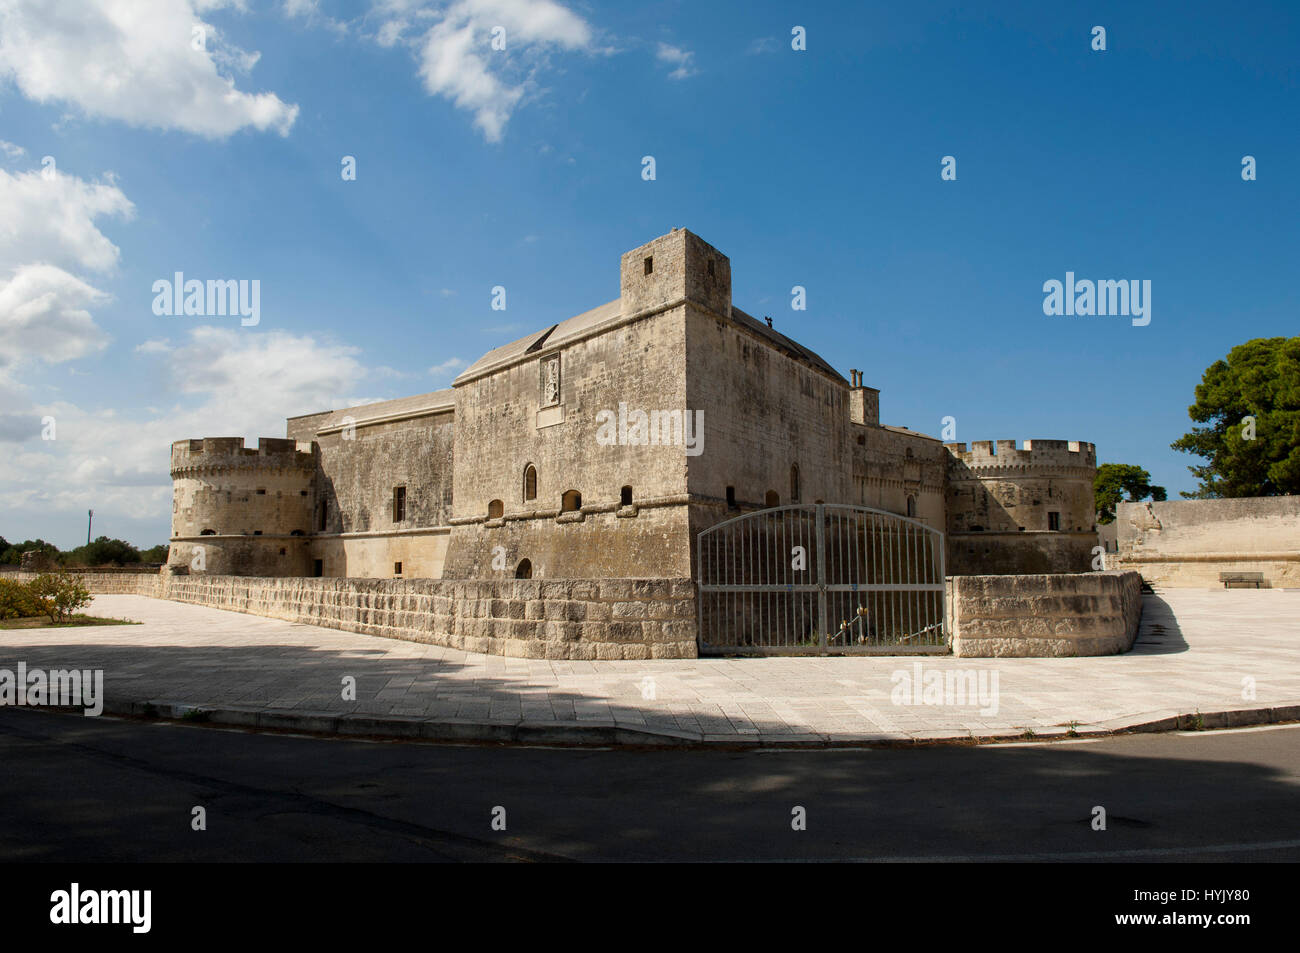 L'Europe,Italie,Puglia citadelle fortifiée de Acaya de petits murs fortifiés du seizième siècle en Italie Banque D'Images